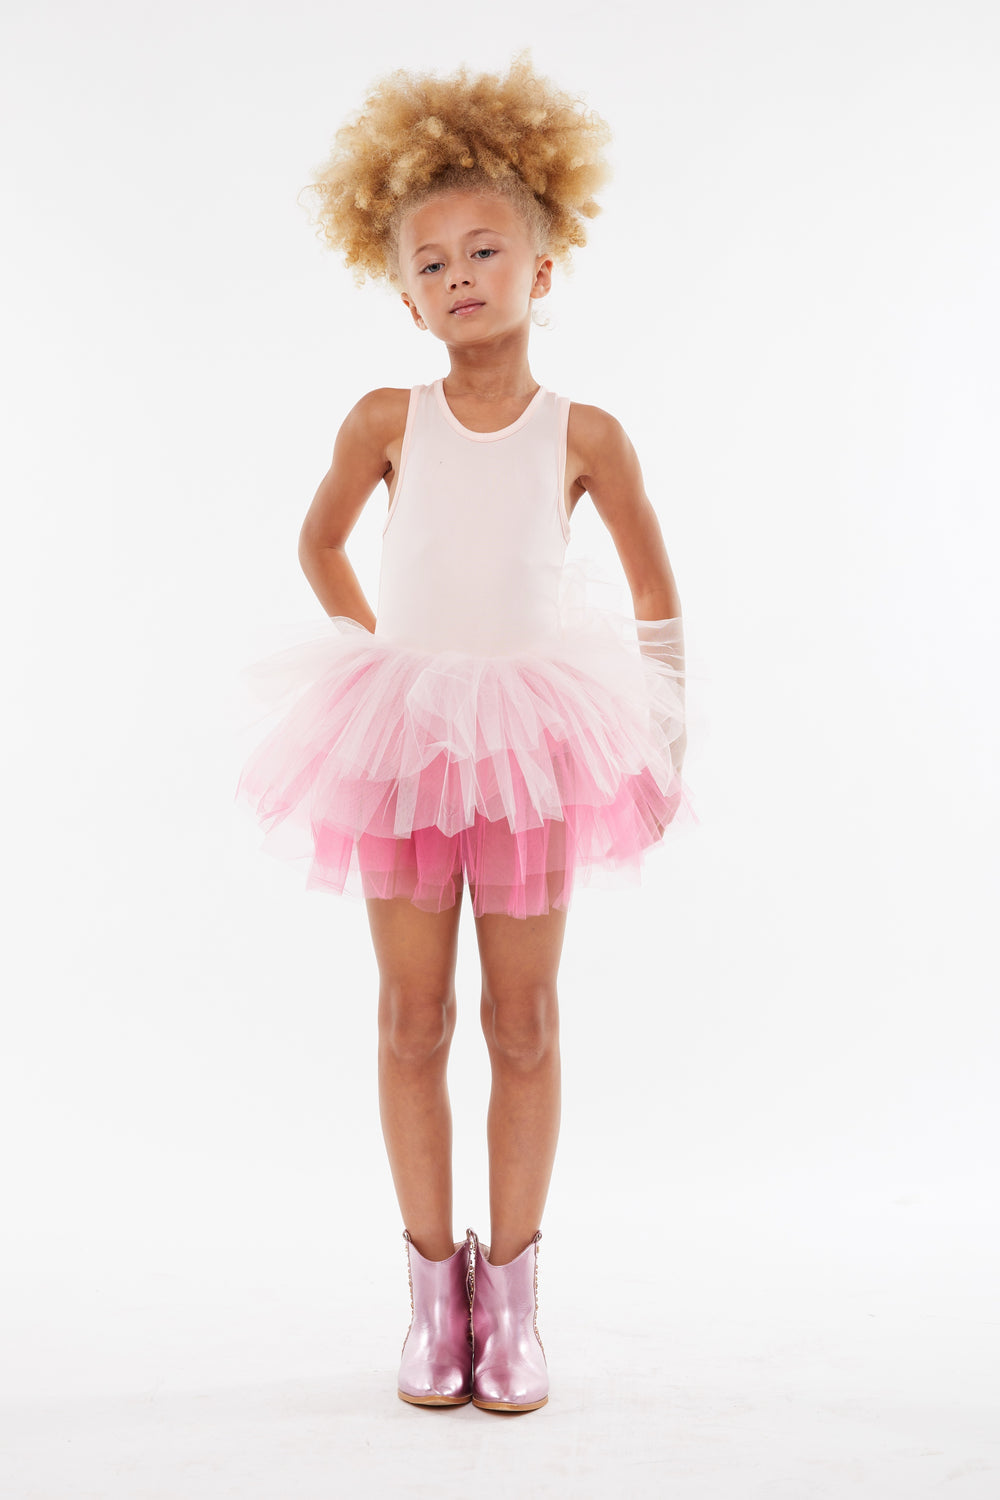 B.A.E Ombre Tutu Dress - Jewel Pink - Twinkle Twinkle Little One